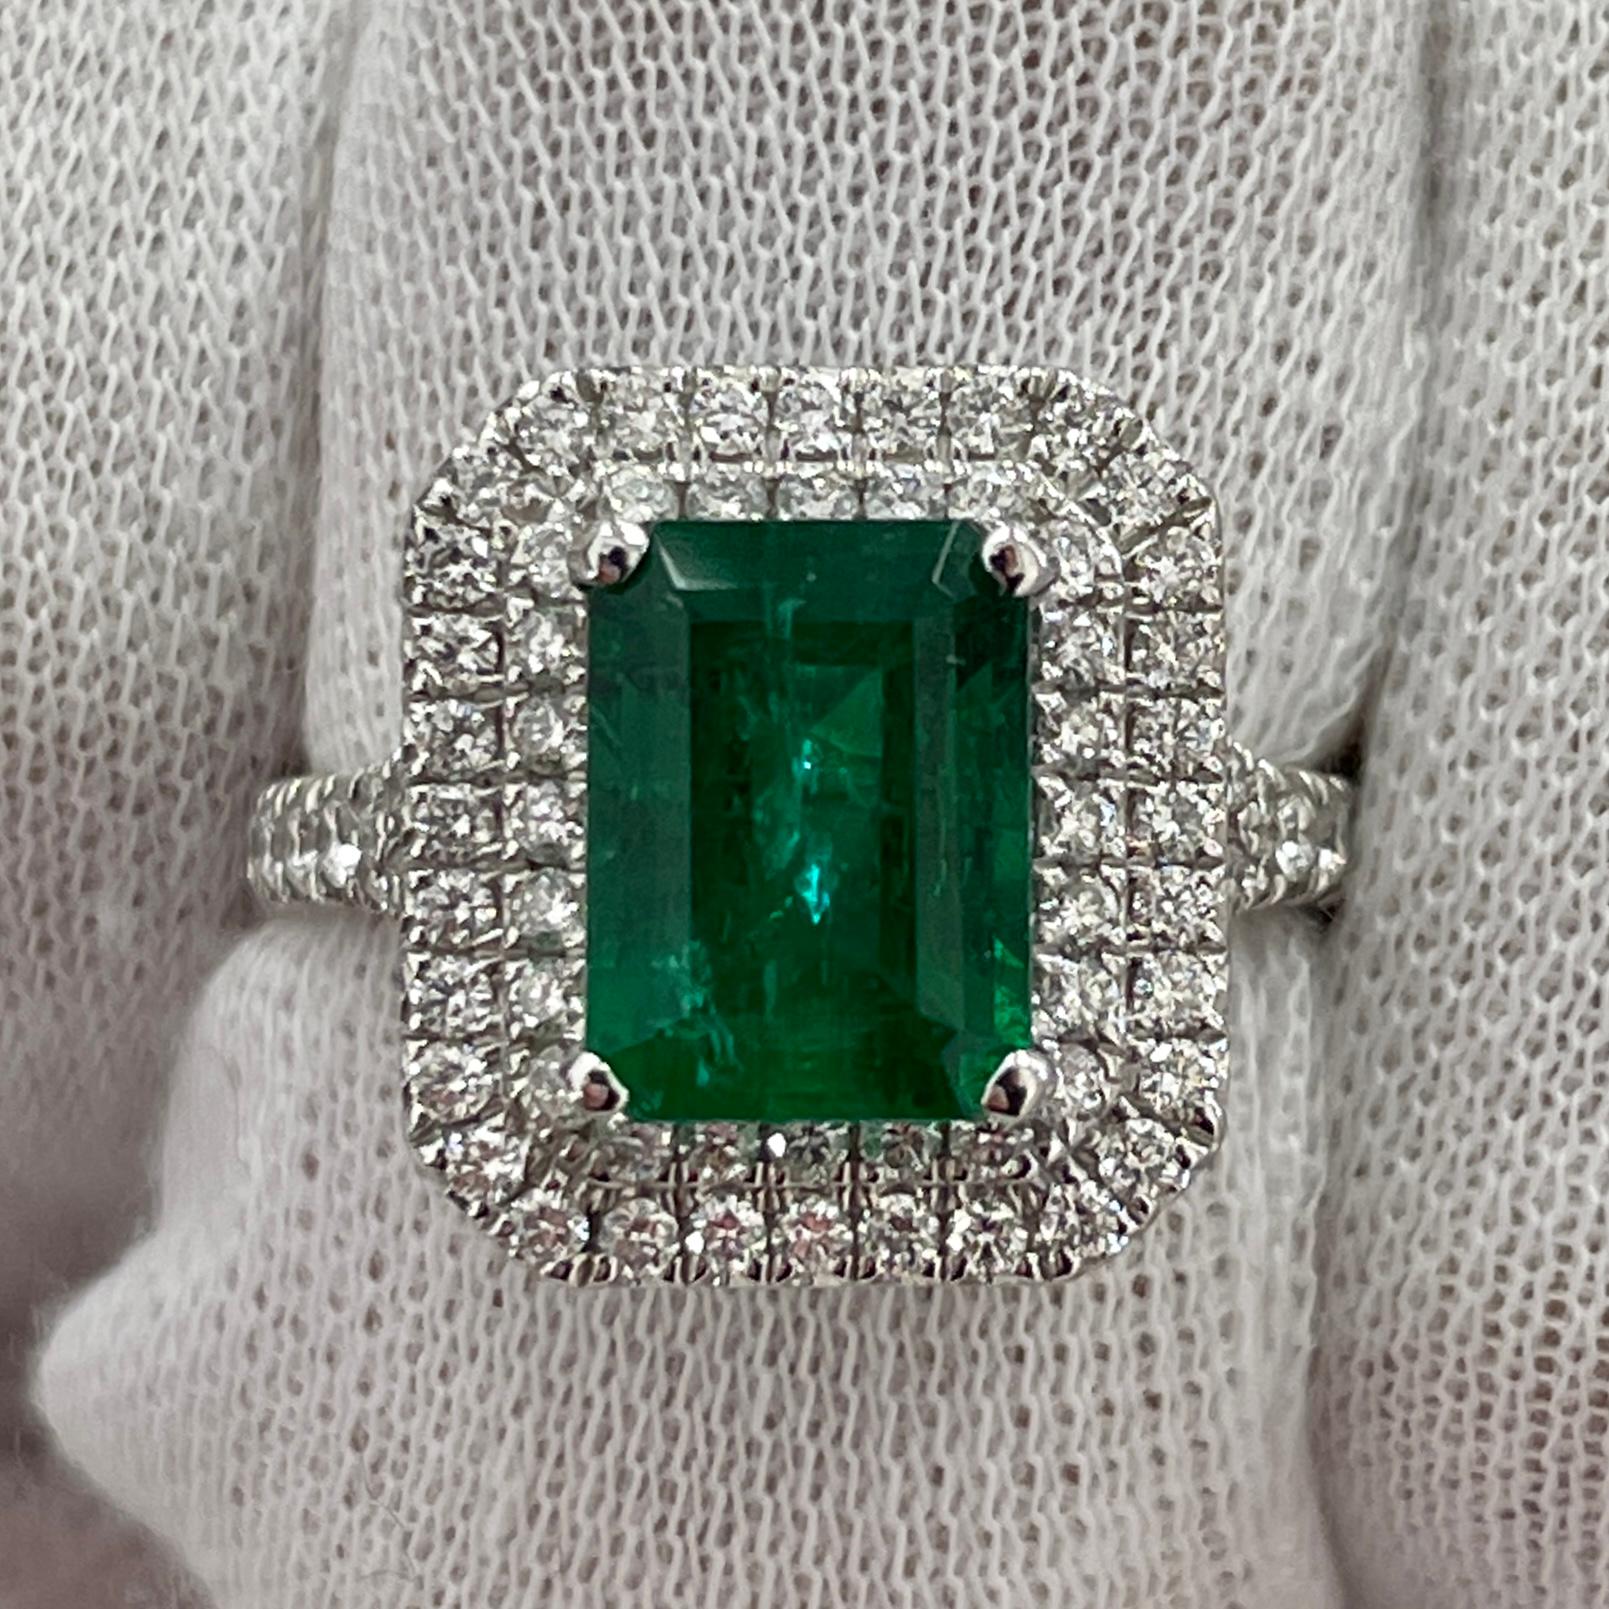 Dies ist eine sehr offene Farbe Smaragd geschnitten Smaragd, in einem eleganten 18K Weißgold und Diamant-Ring mit 0,80Ct von brillanten weißen Diamanten montiert. Geeignet für jede Gelegenheit!